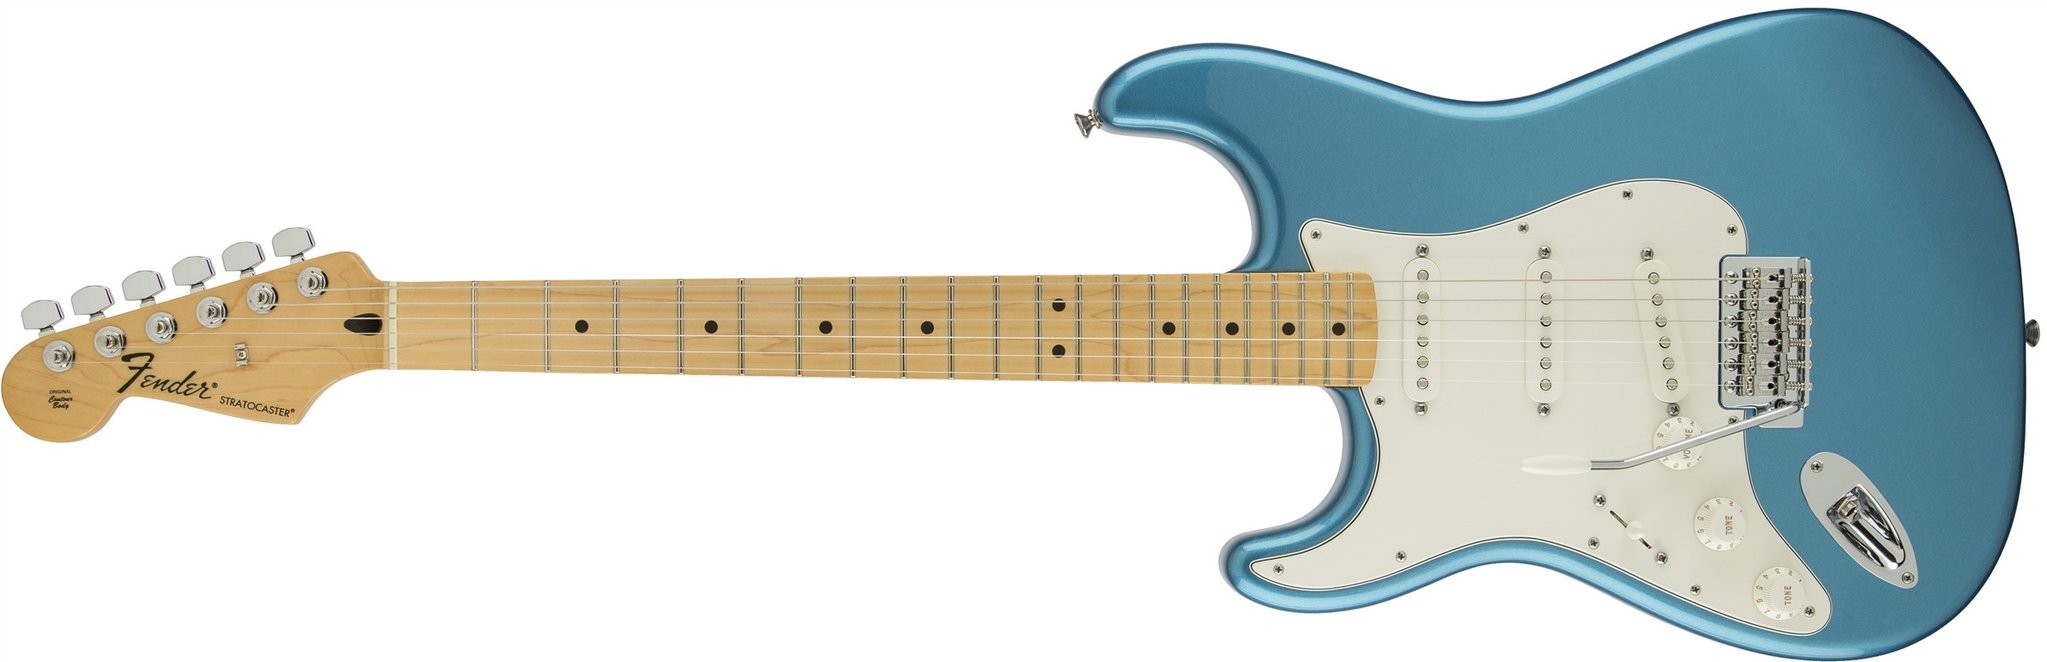 Standard Stratocaster® Maple Fingerboard, Lake Placid Blue, Left Handed